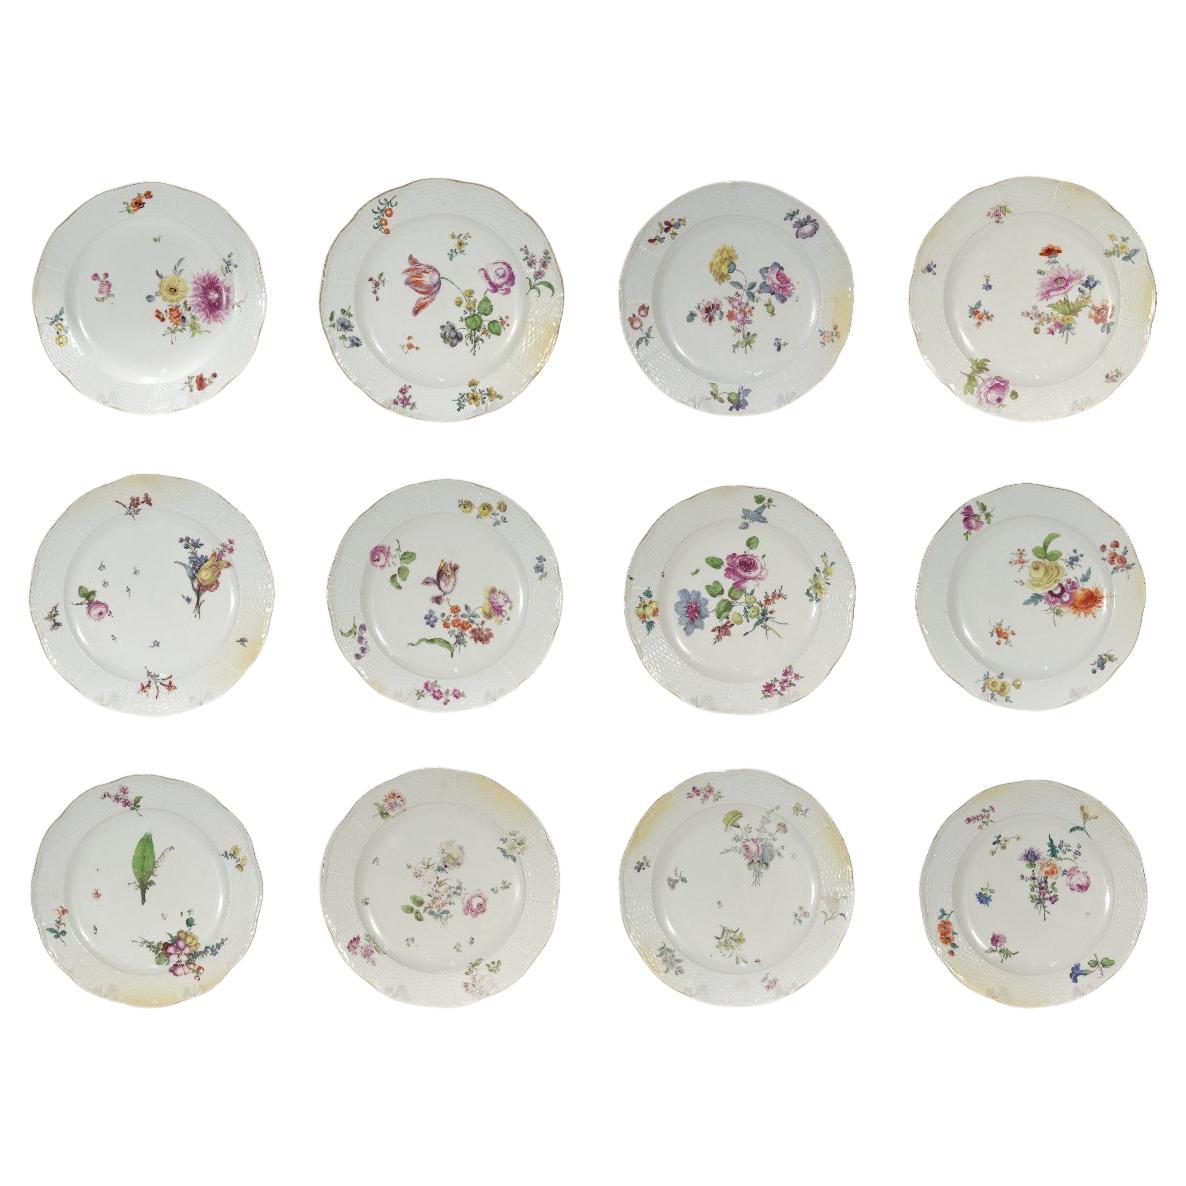 Set of 12 Antique Meissen Porcelain 'Old Ozier' Pattern Cabinet or Dinner Plates